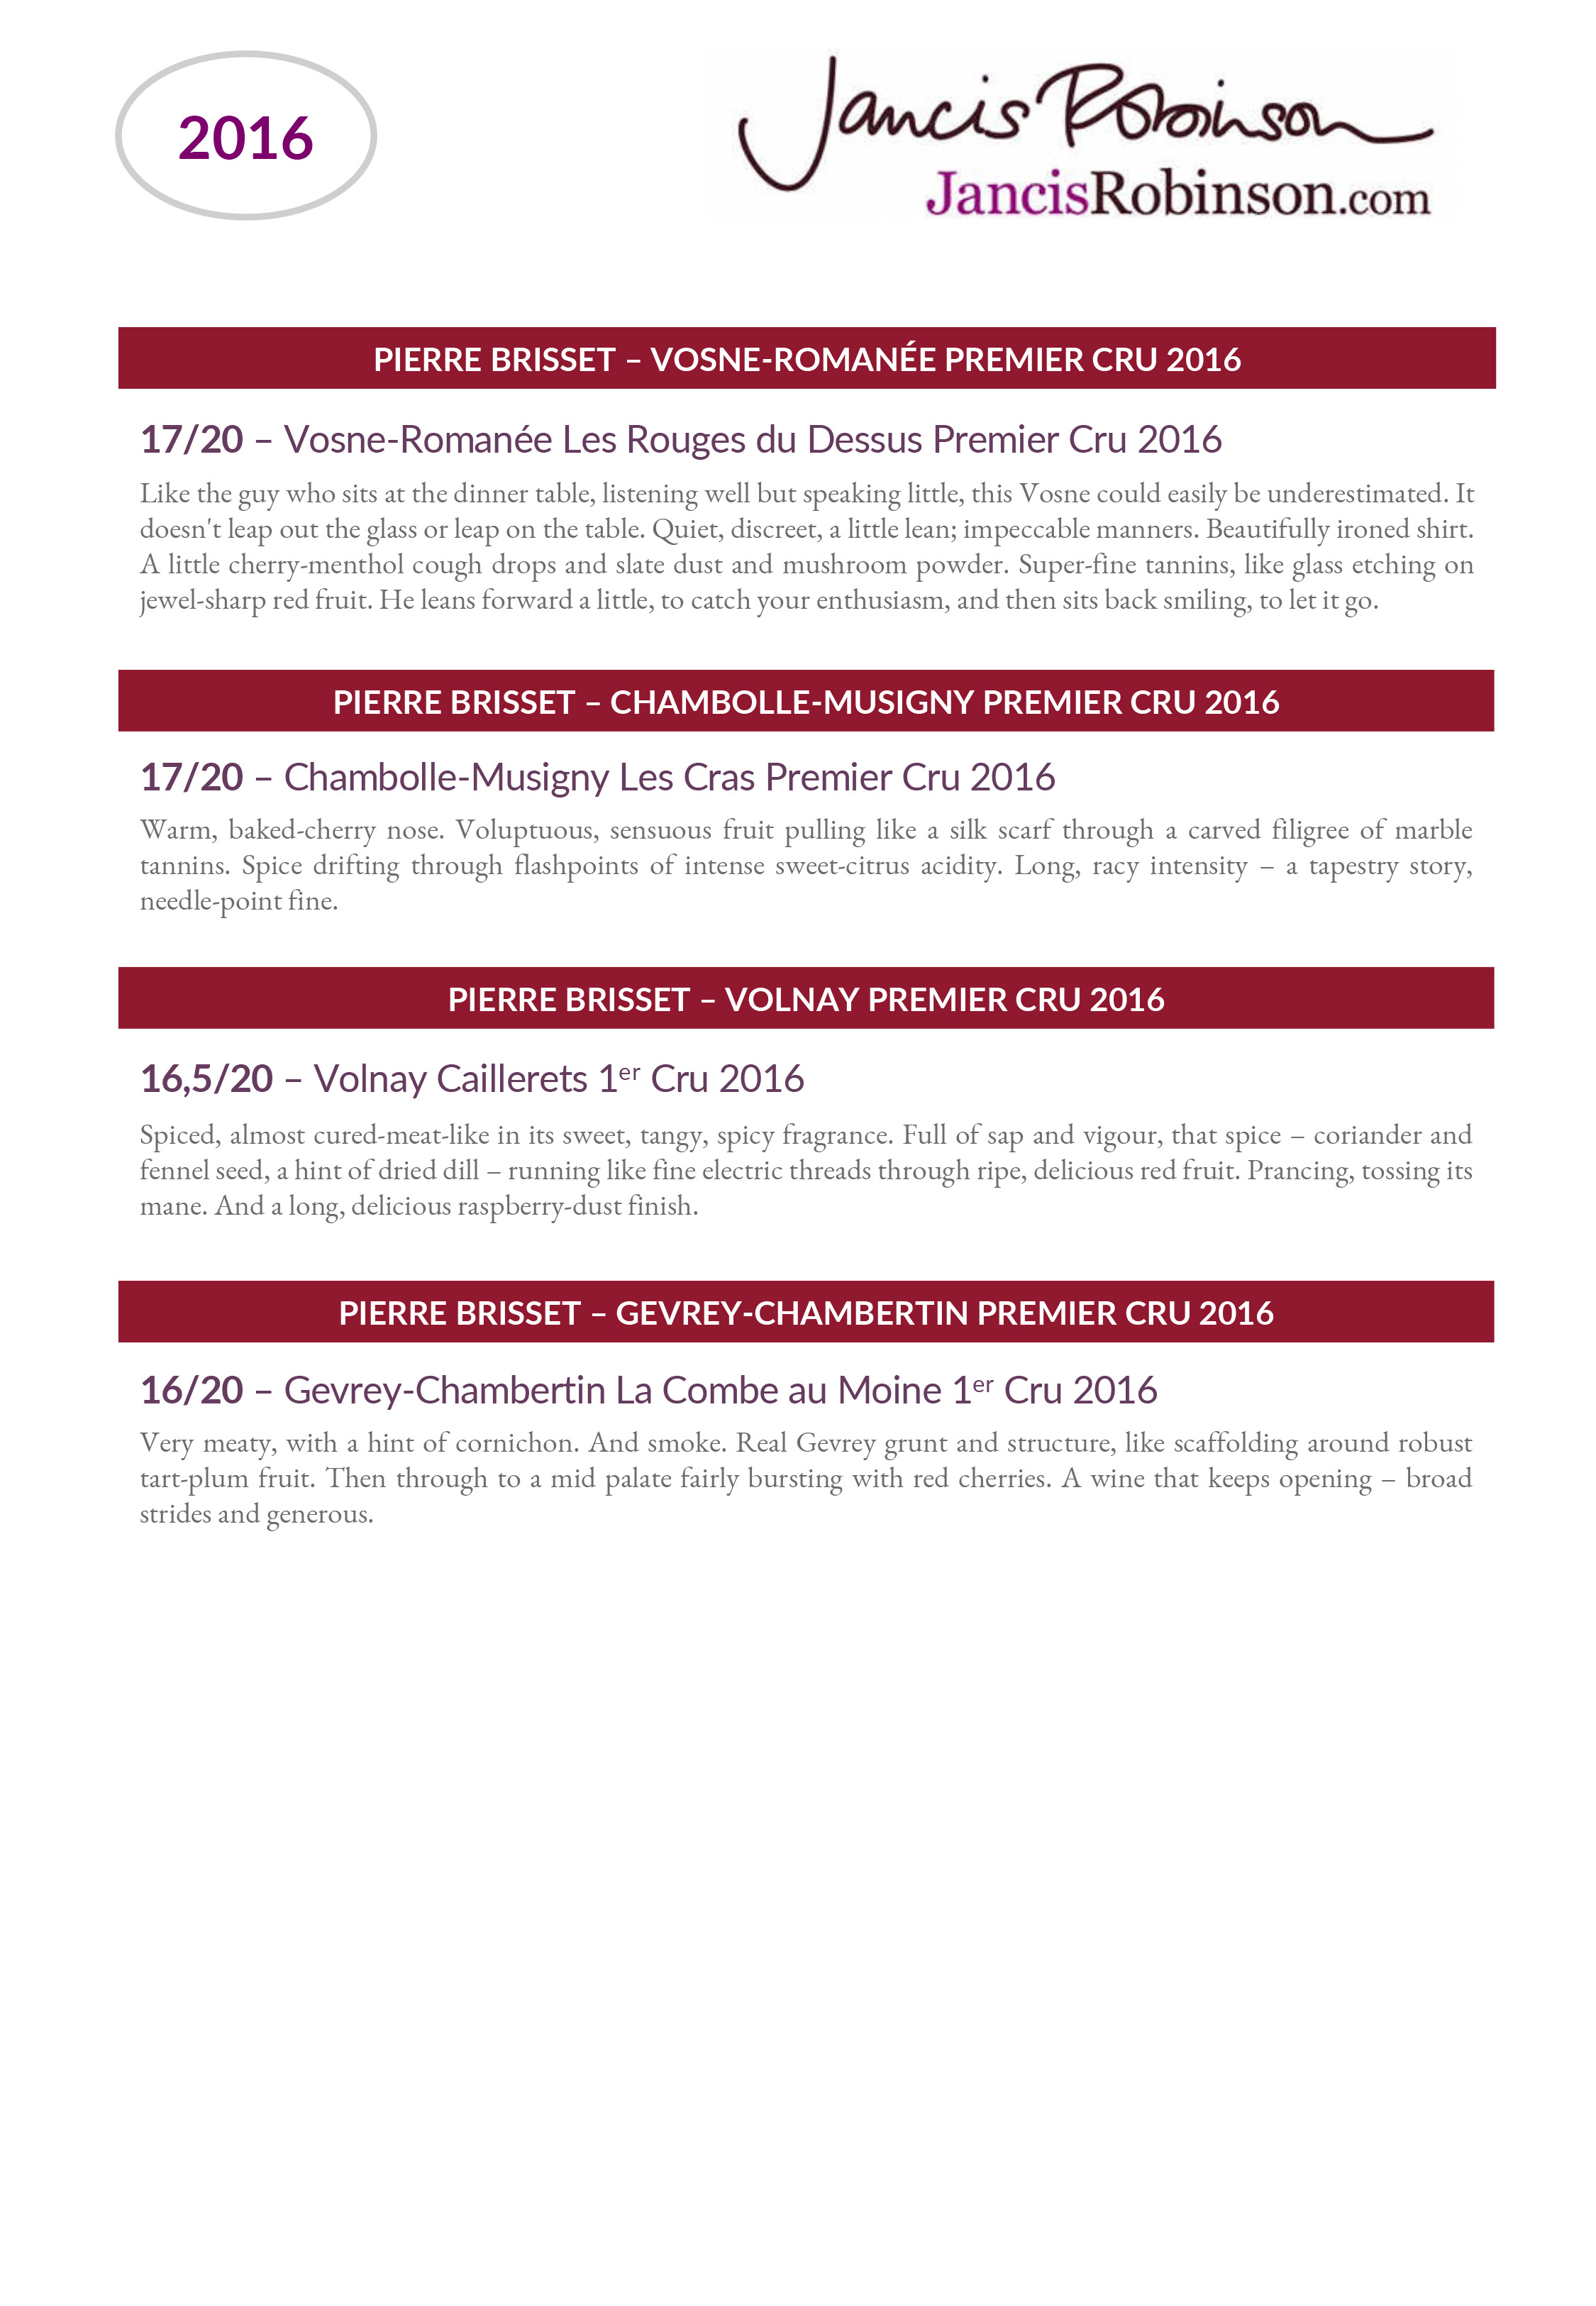 Vins rouges Pierre Brisset millesime 2016 : Notes de degustation de Jancis Robinson